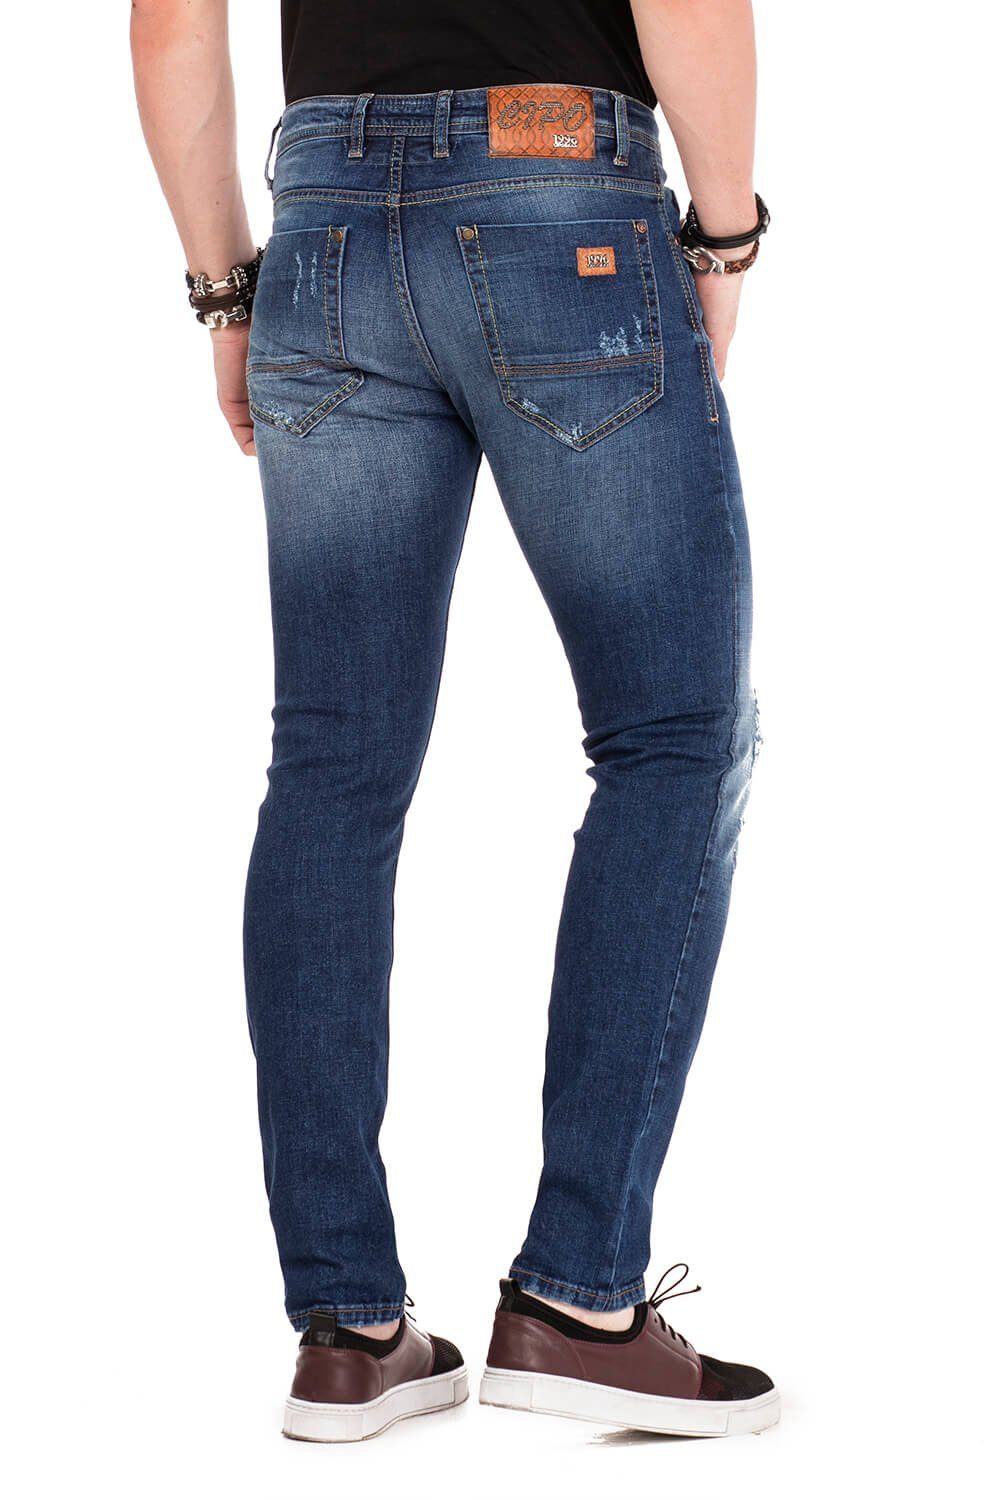 Cipo & Baxx Slim-fit-Jeans im Fİt Straight